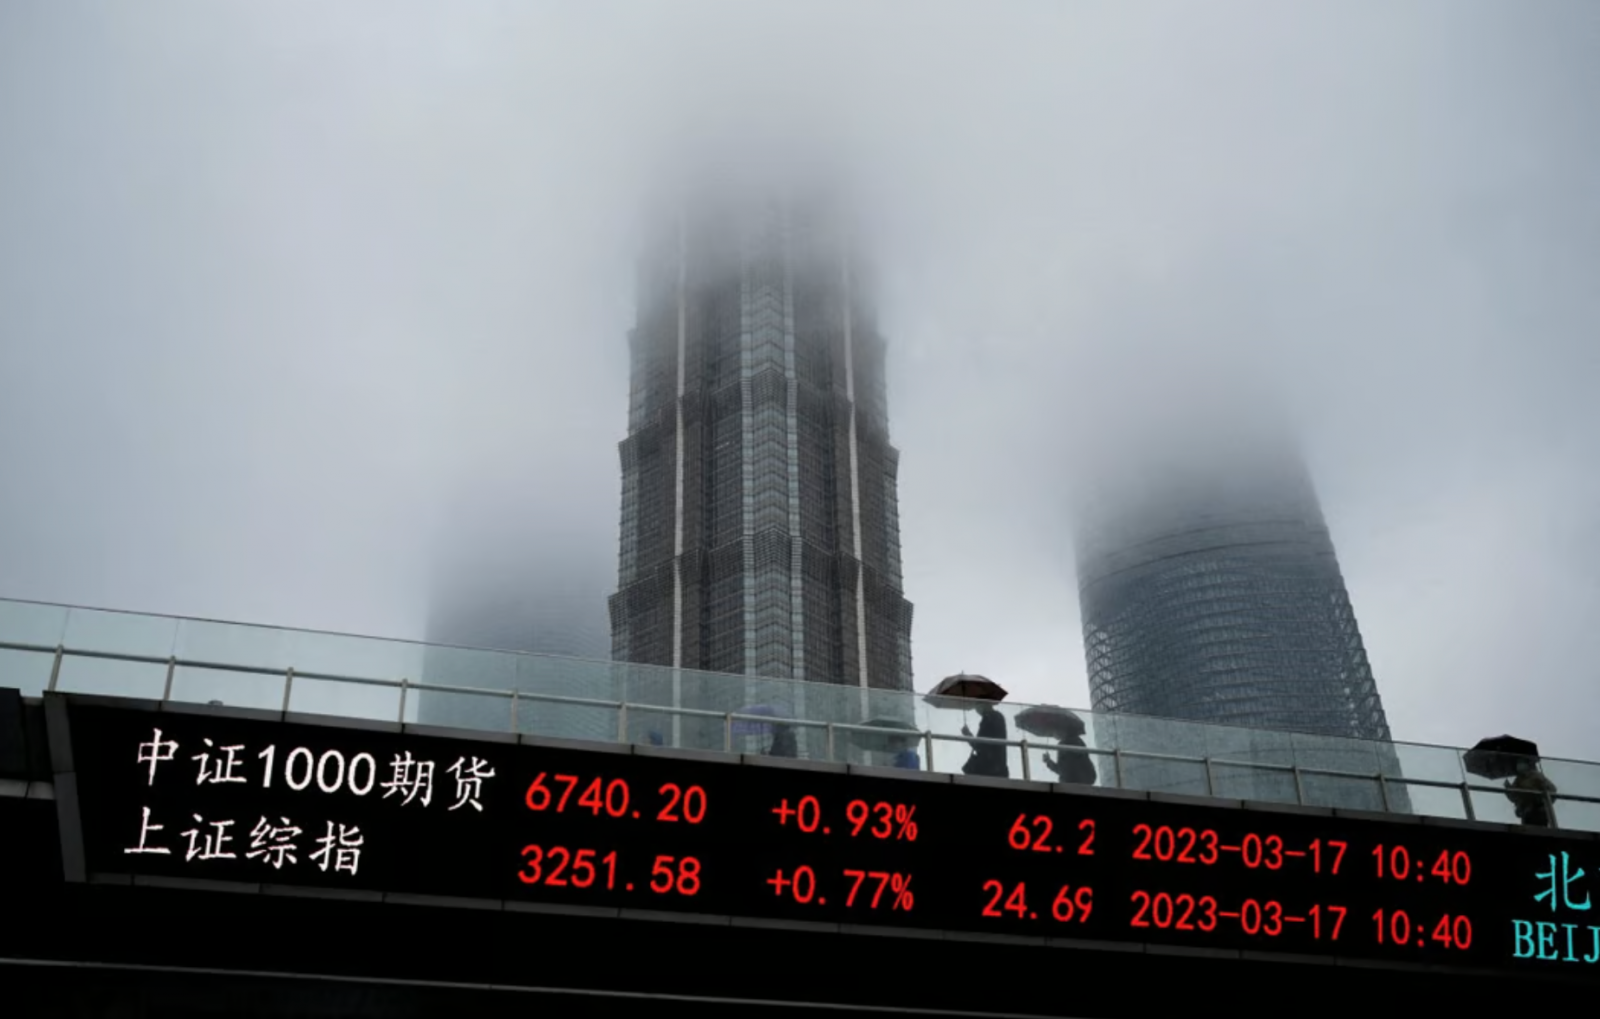 Một bảng điện tử hiển thị các chỉ số chứng khoán tại khu tài chính Lujiazui ở Thượng Hải, vào ngày 17 tháng 3 năm 2023. Ảnh: Reuters